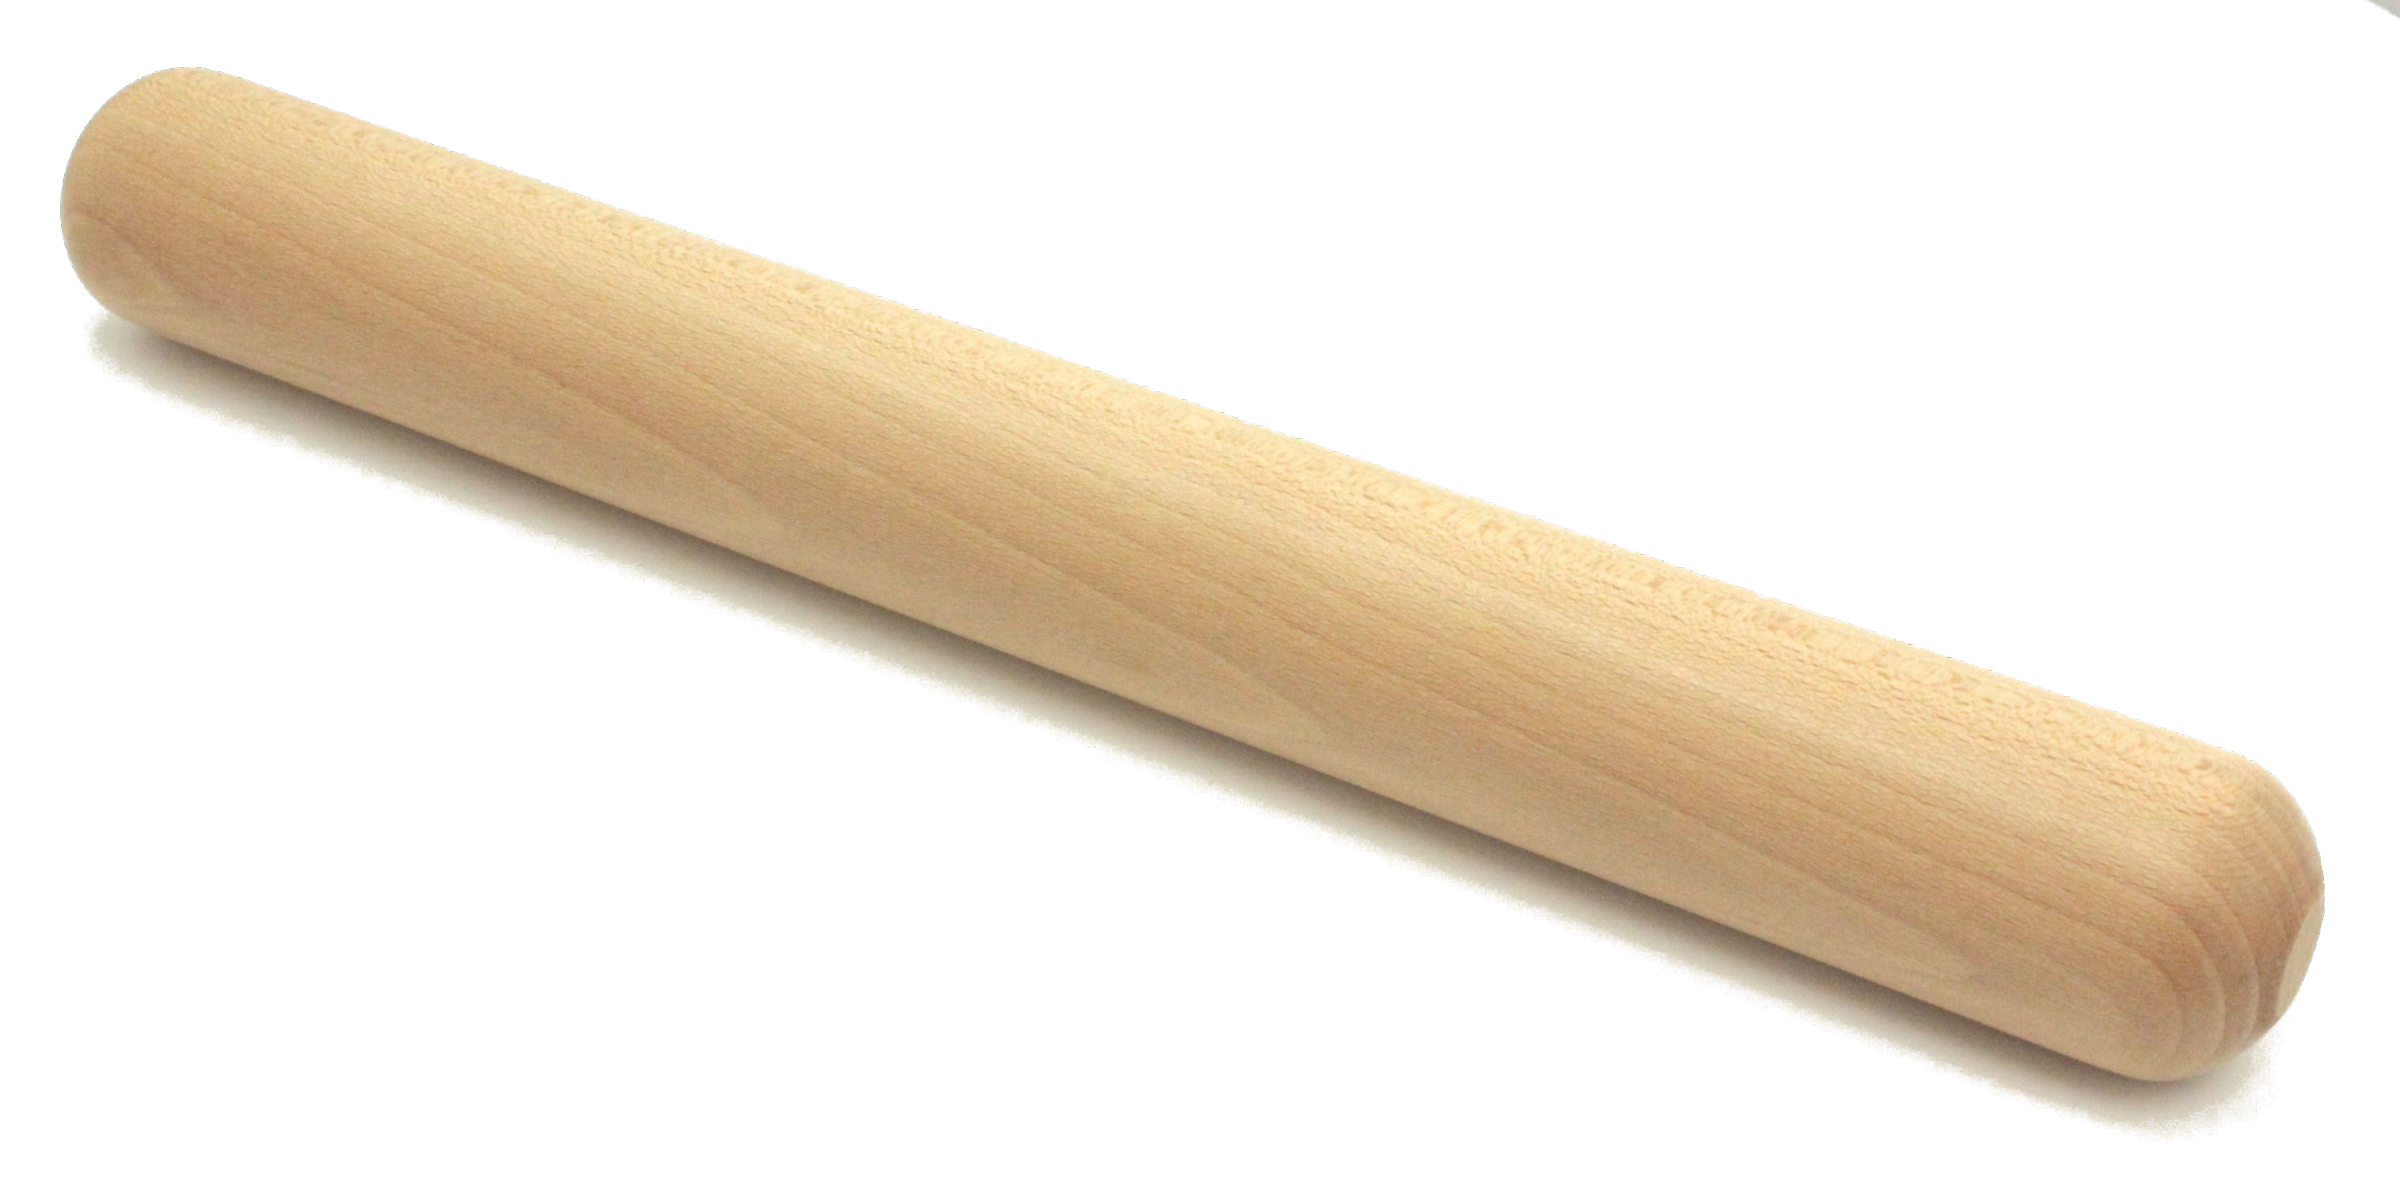 Rouleau à pâtisserie en hêtre Normand spécial pâte 50 cm